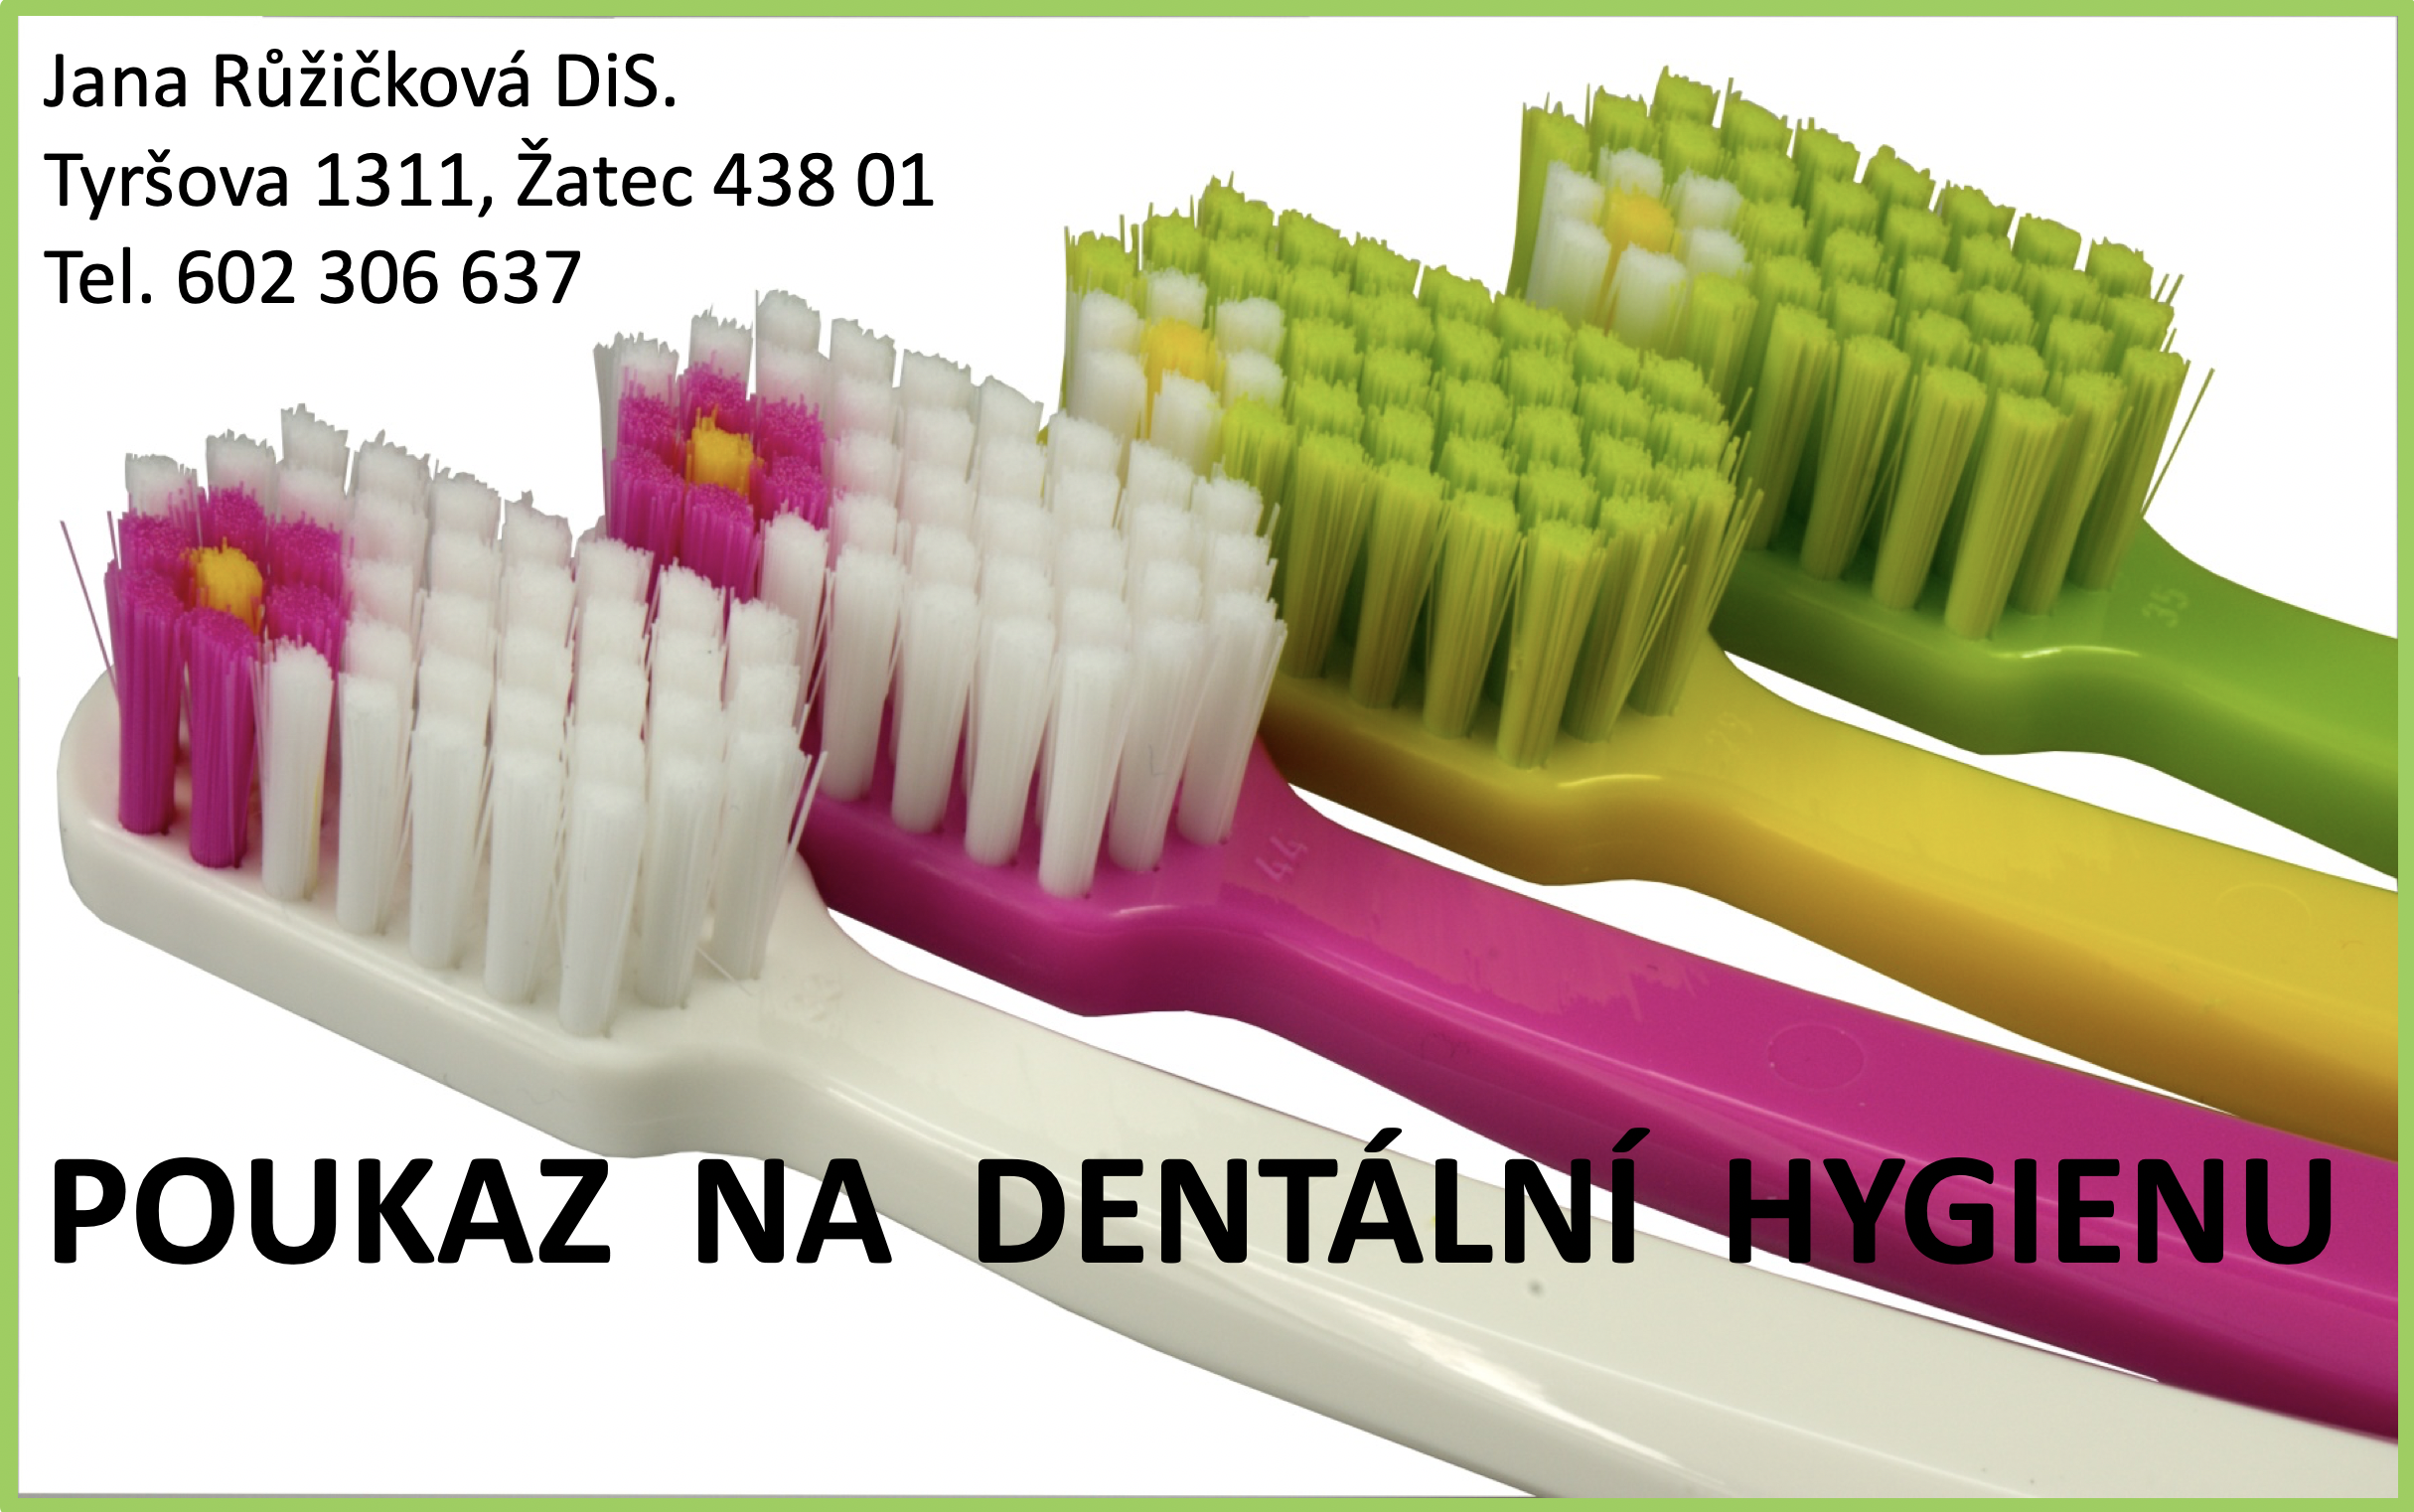 Dárkový poukaz na dentální hygienu